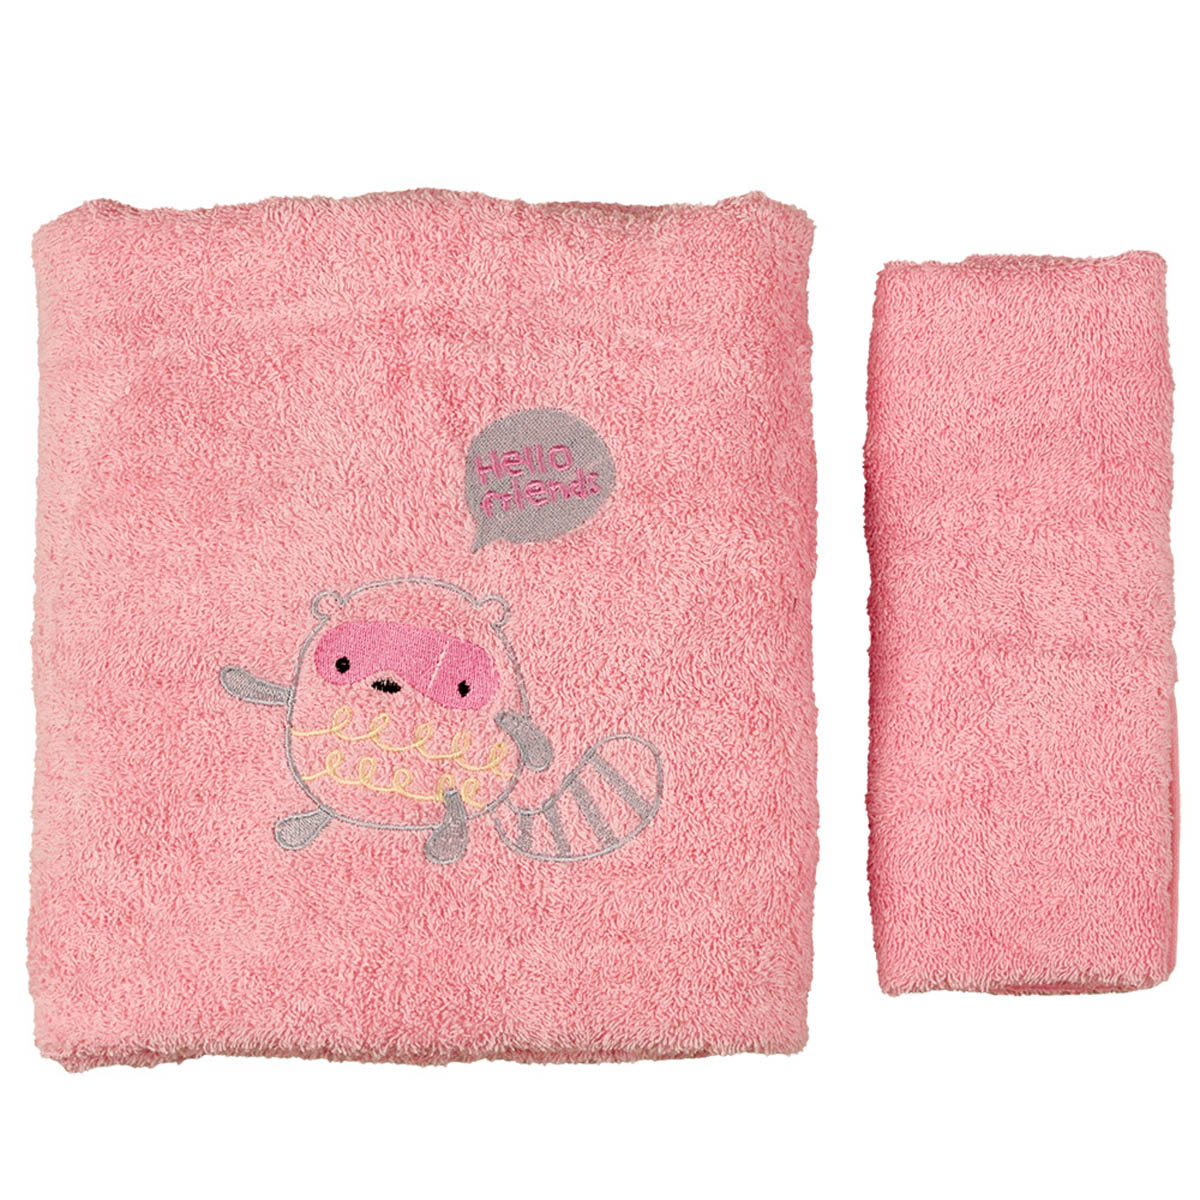 Βρεφικές Πετσέτες (Σετ 2τμχ) Κόσμος Του Μωρού Racoon Ροζ